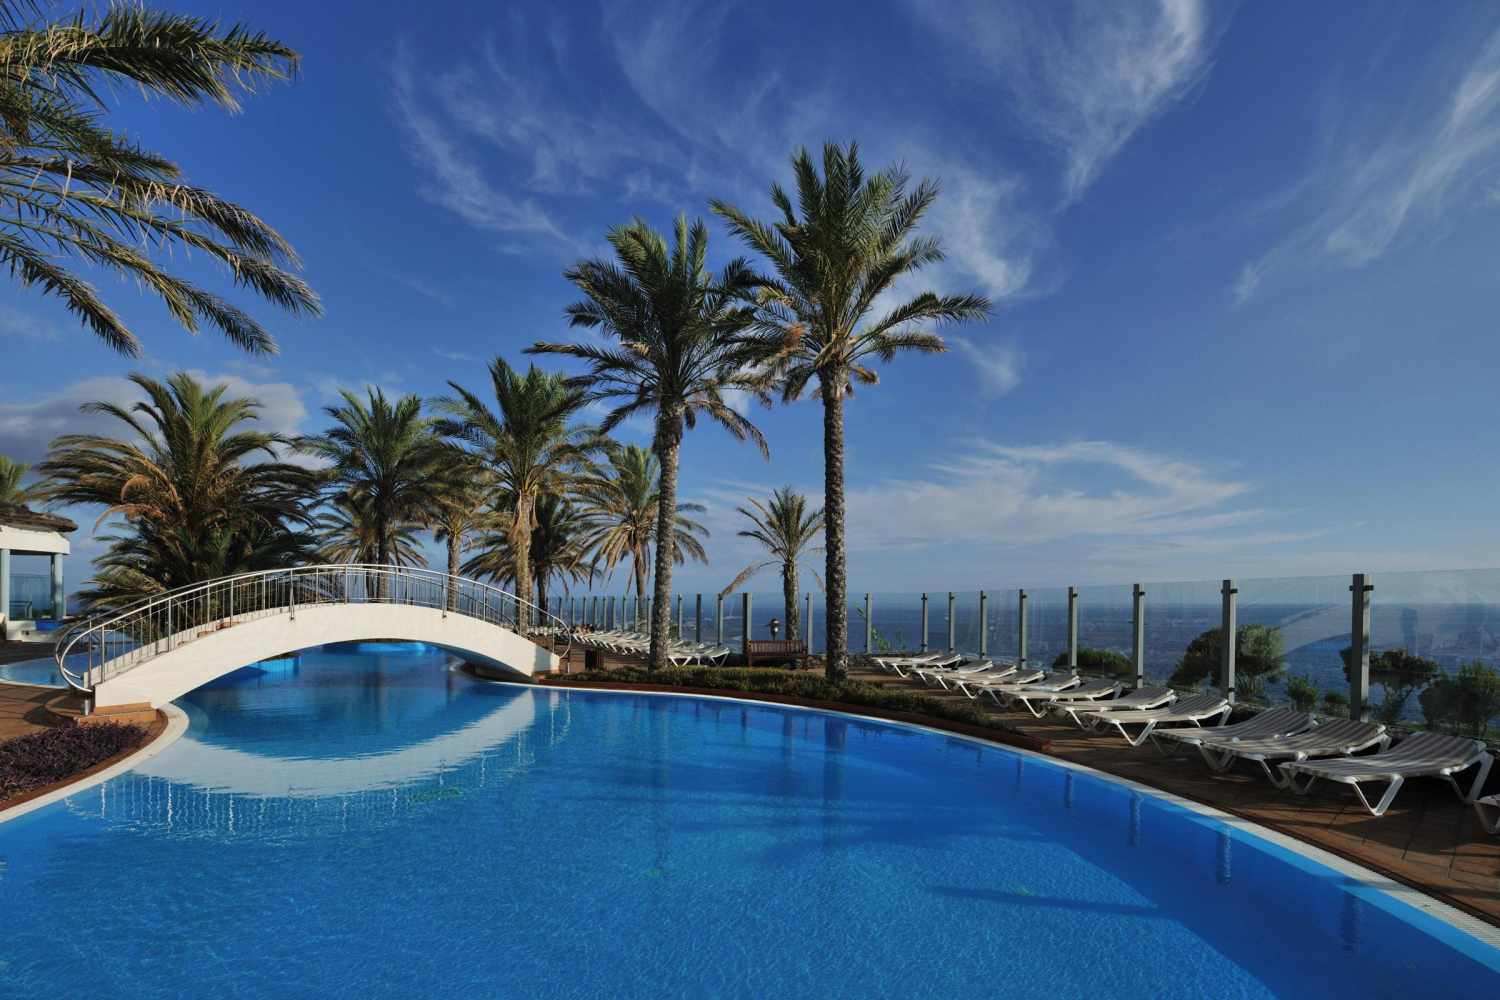 Pestana Grand Premium Ocean Resort, Funchal, Madeira, Portugal